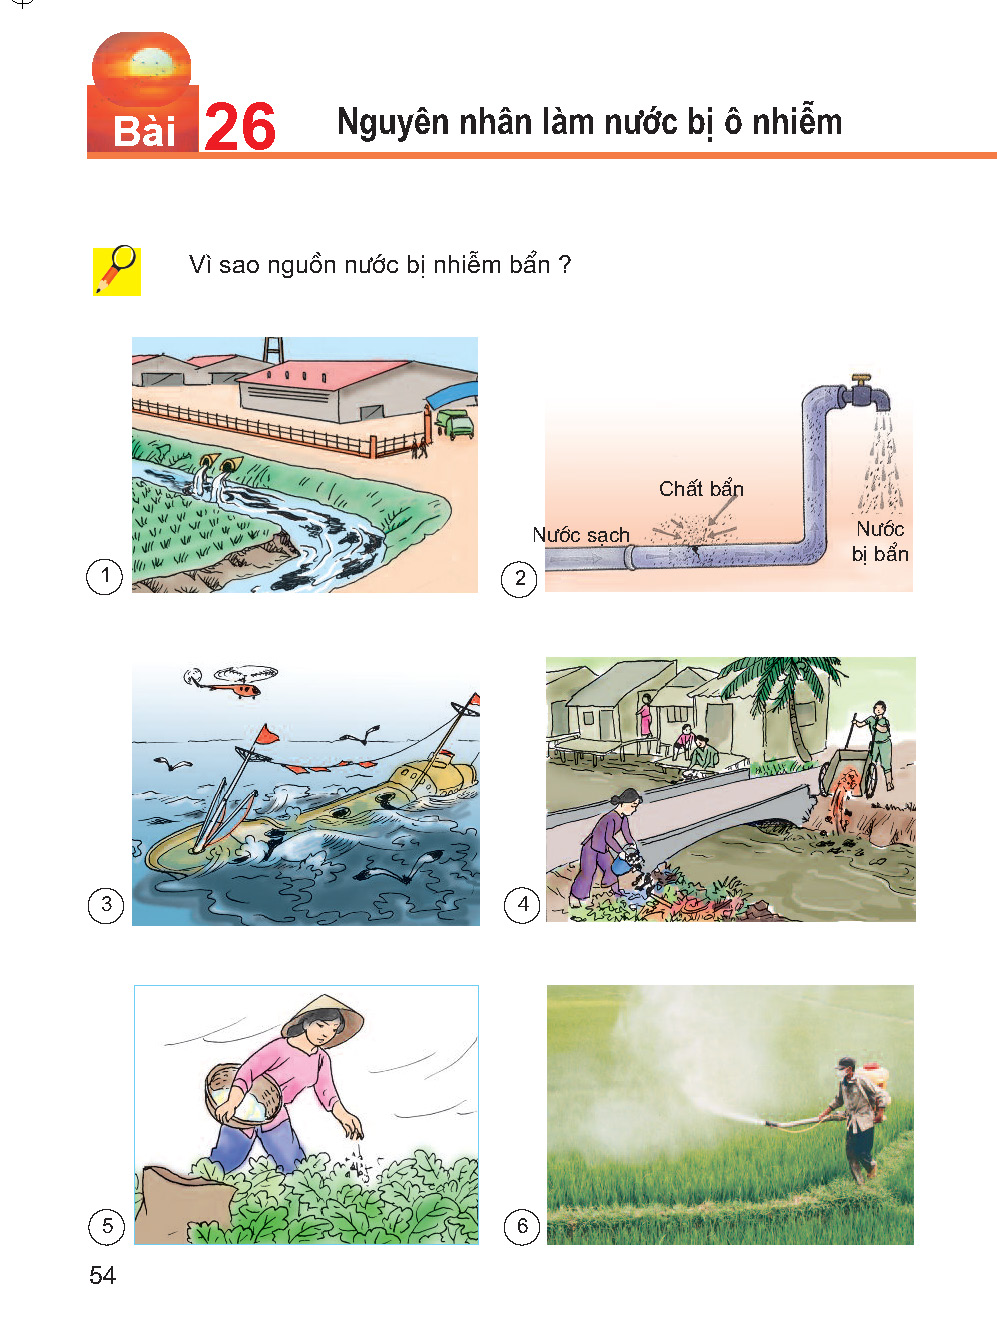 Học sinh lớp 4 được học về nước: yêu qúy, sử dụng và bảo vệ nguồn nước 3